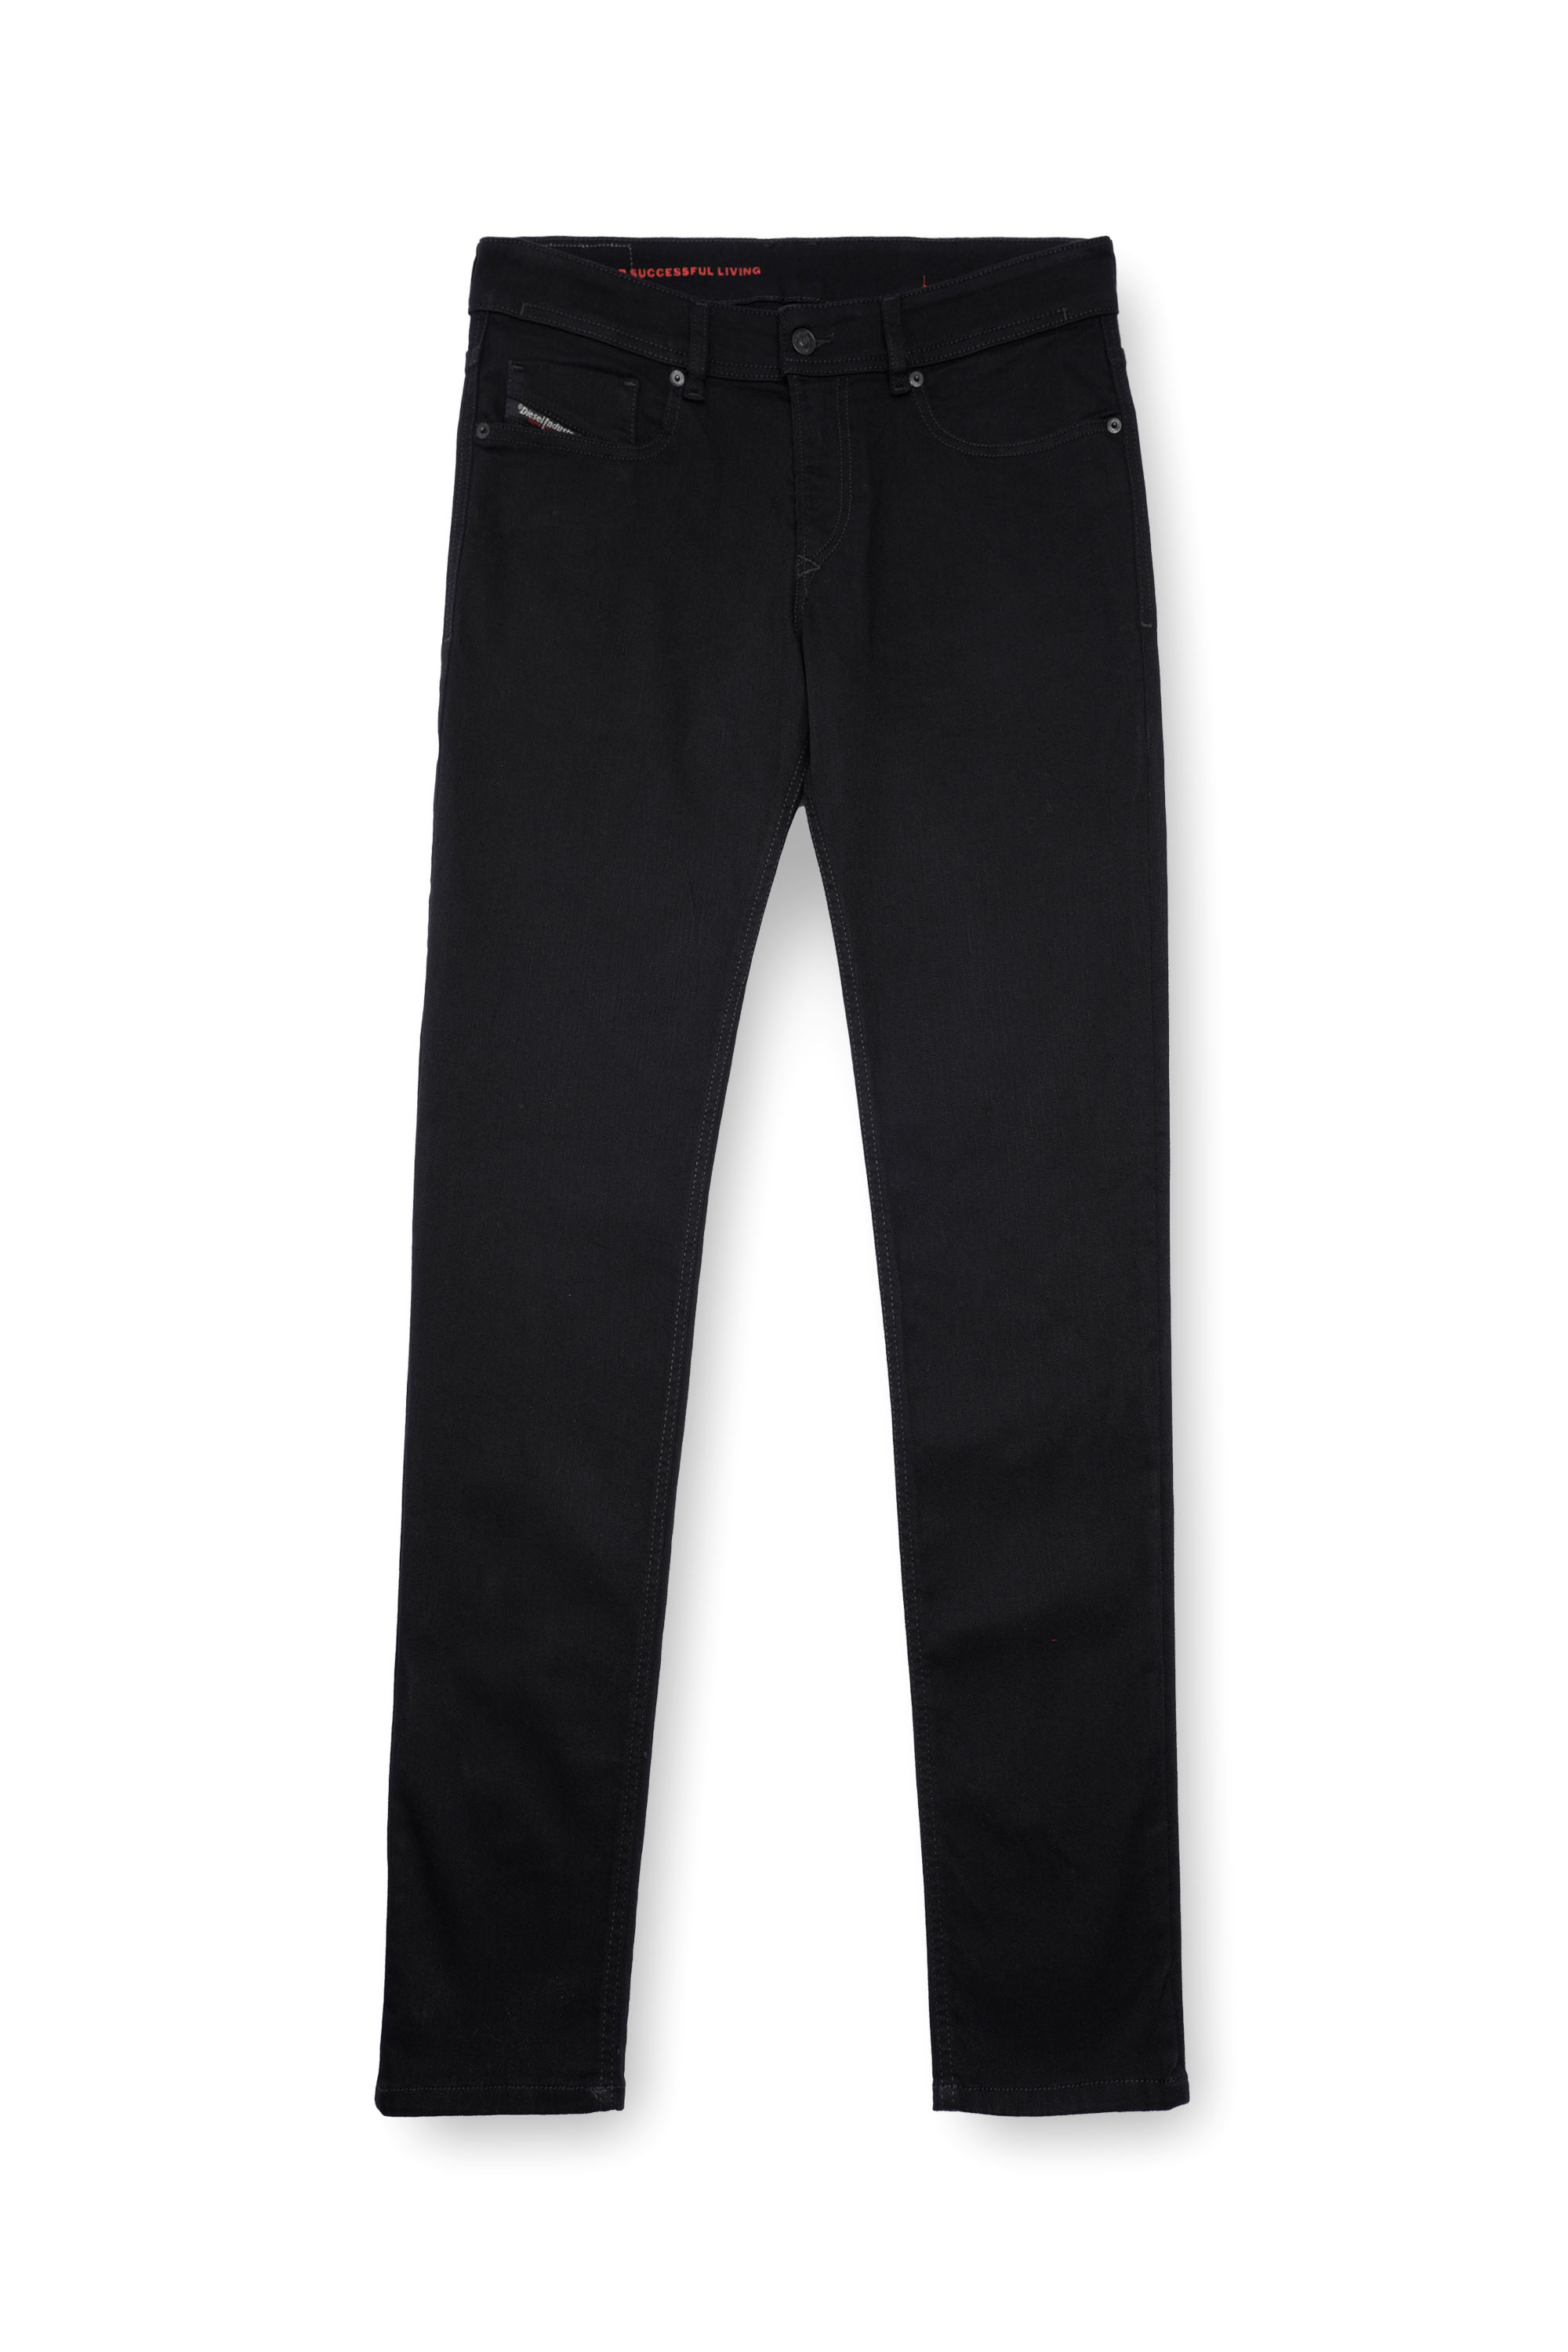 Diesel - Skinny Jeans 1979 Sleenker 09C51, Black/Dark grey - Image 3